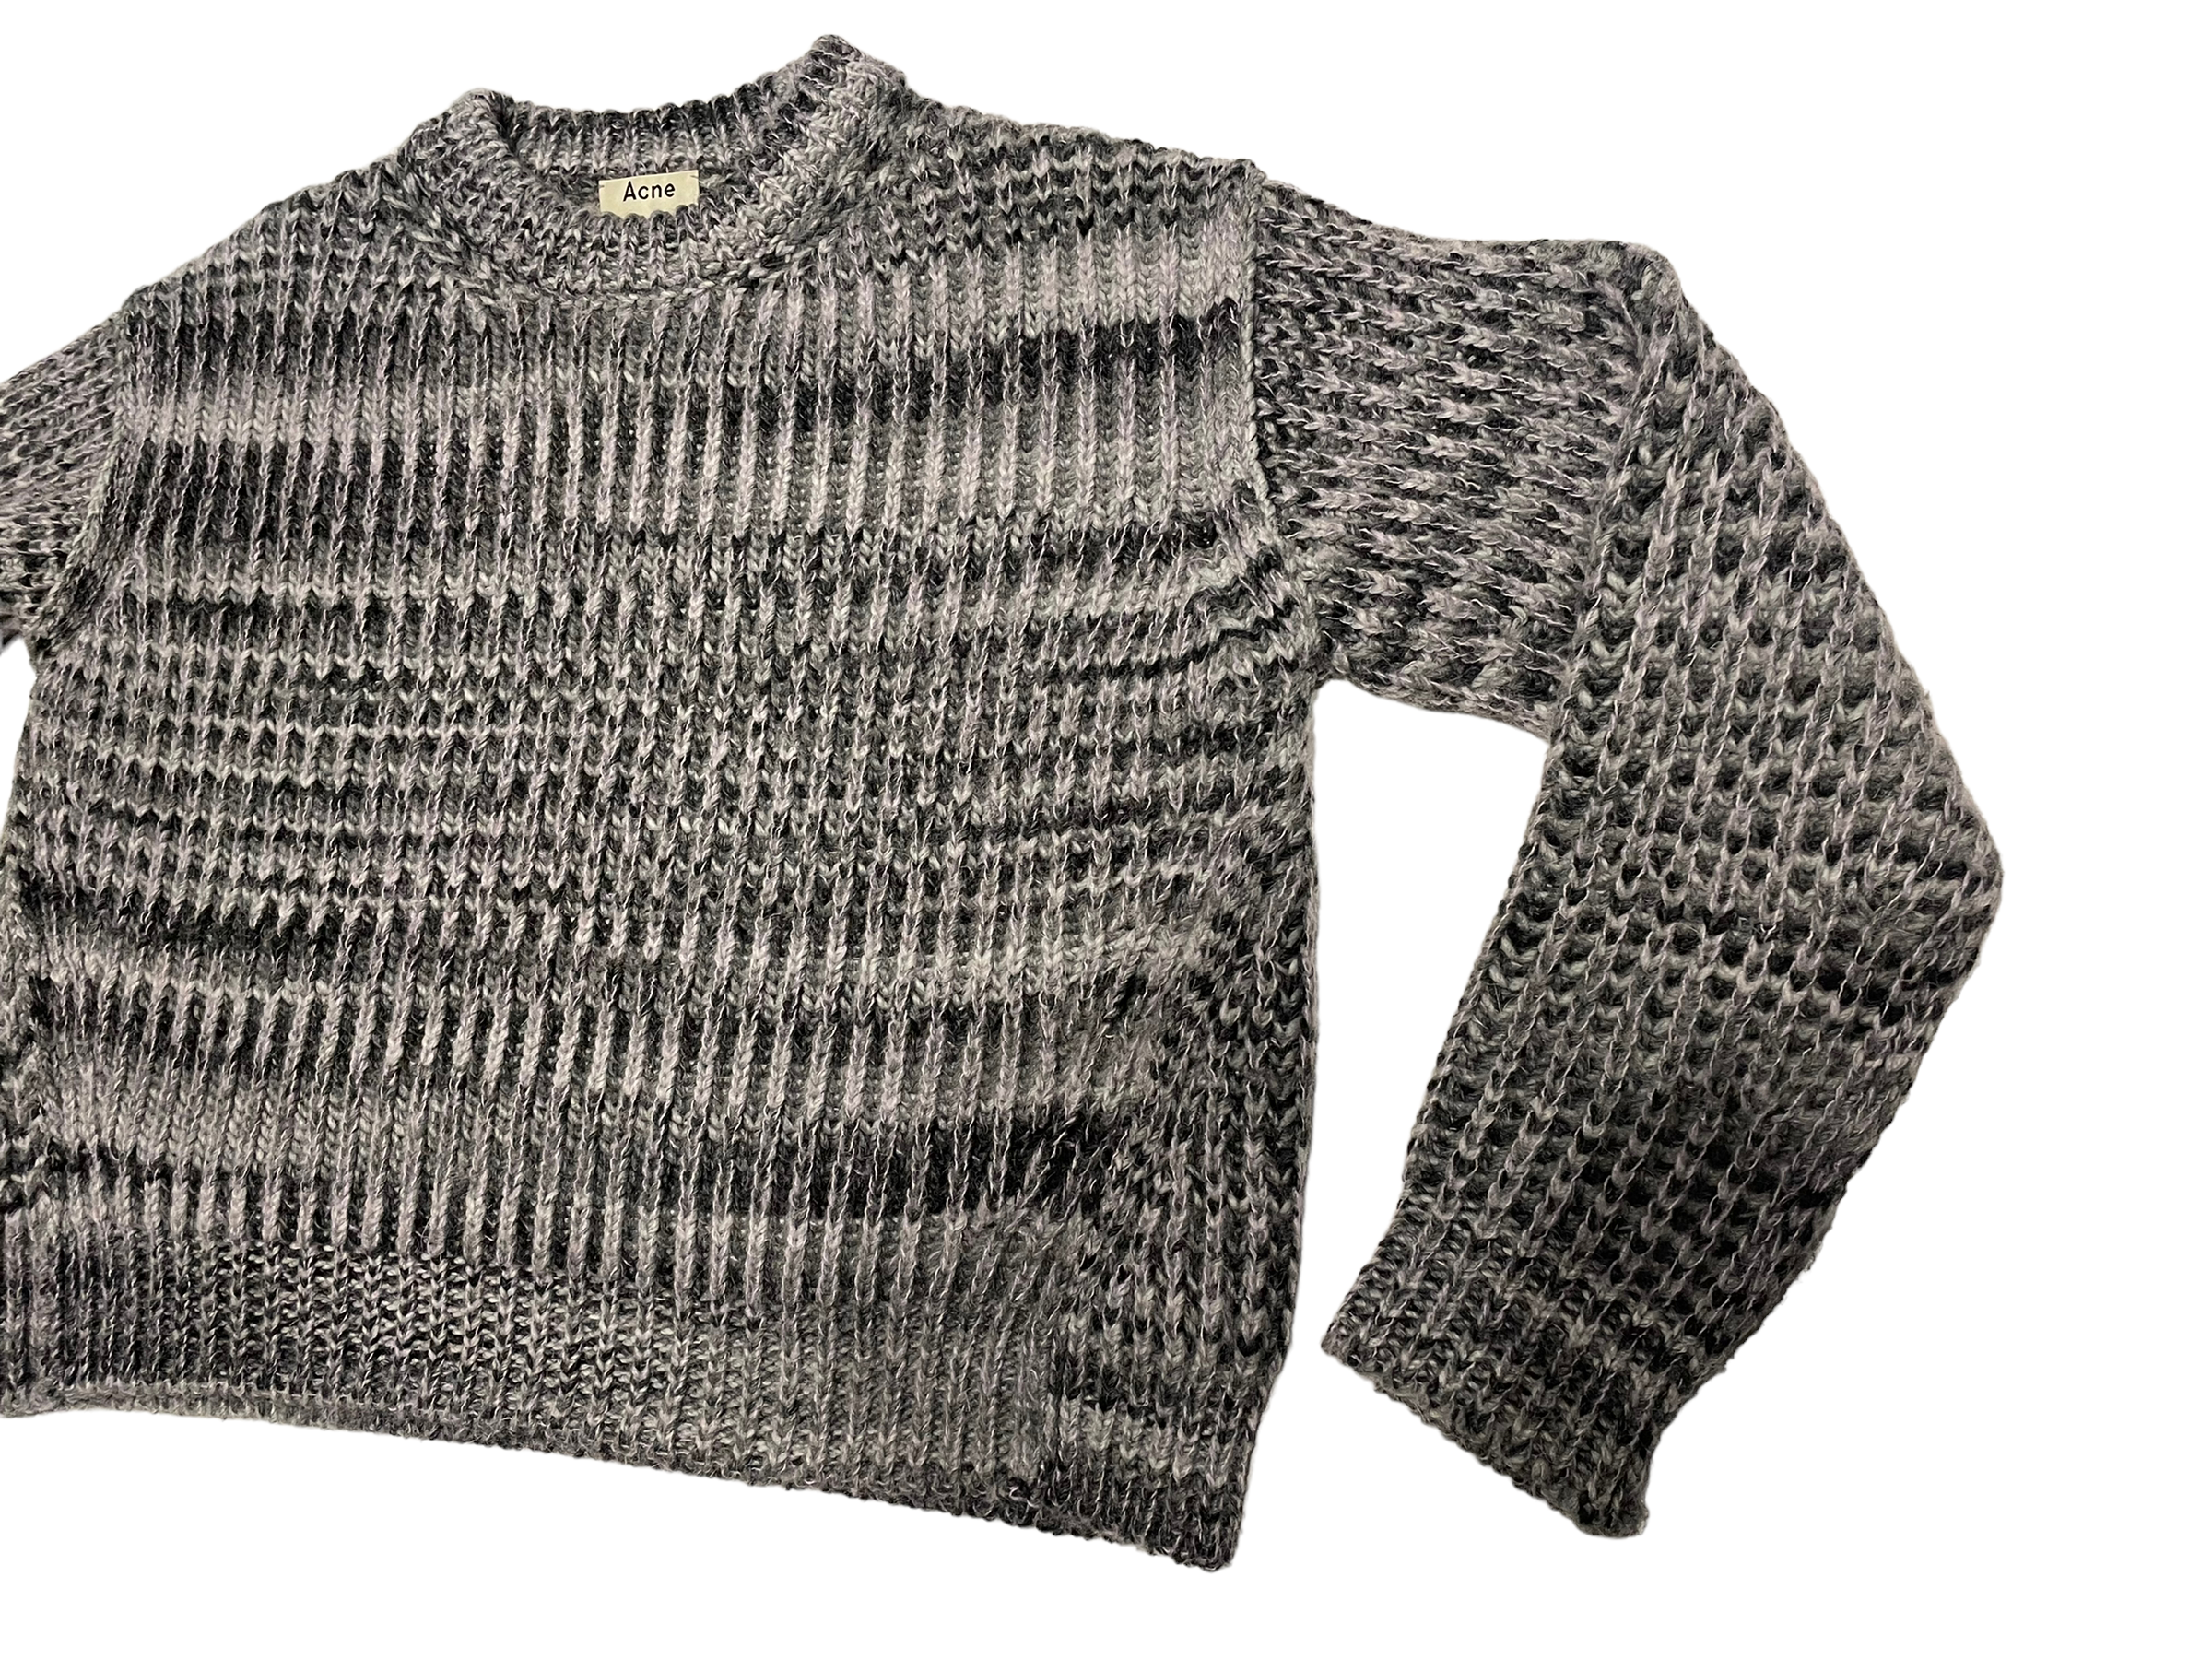 Louis Vuitton Studio Jacquard Sweater Virgil Abloh – 2ndChanceArchive